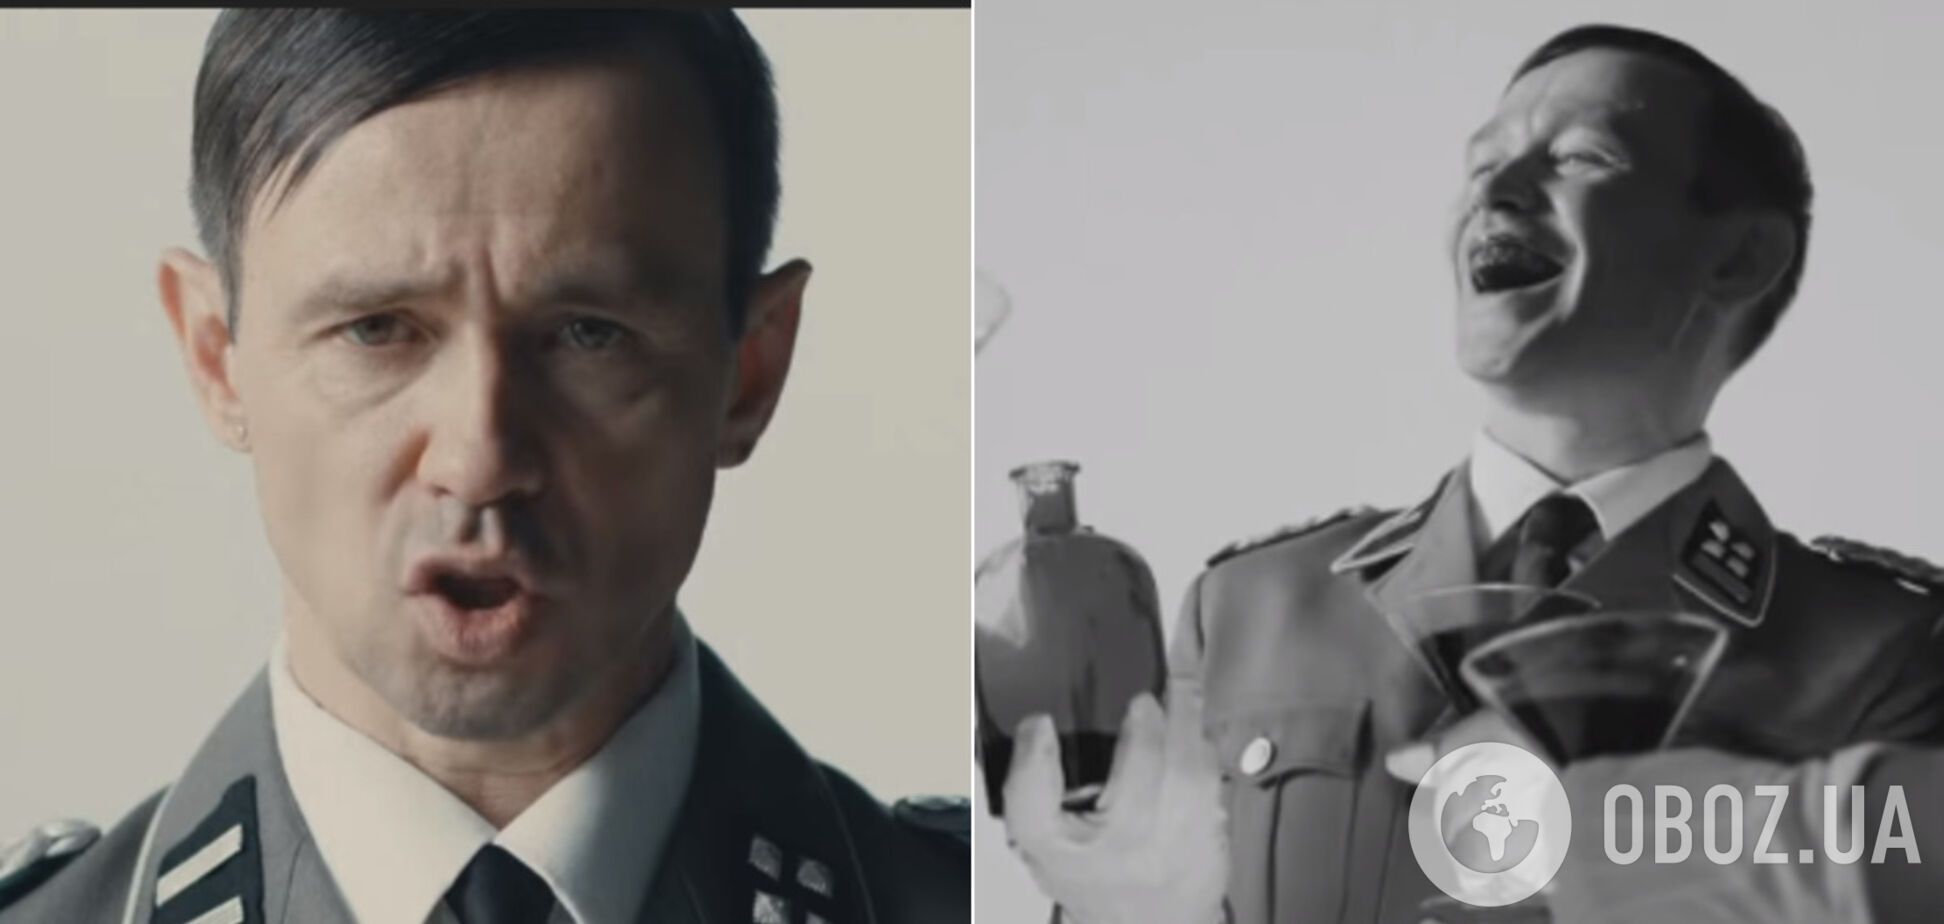 'Країна, що плаче, тоне в шмарклях!' 48-річний Дельфін випустив потужне відео з Гітлером і похоронами Сталіна